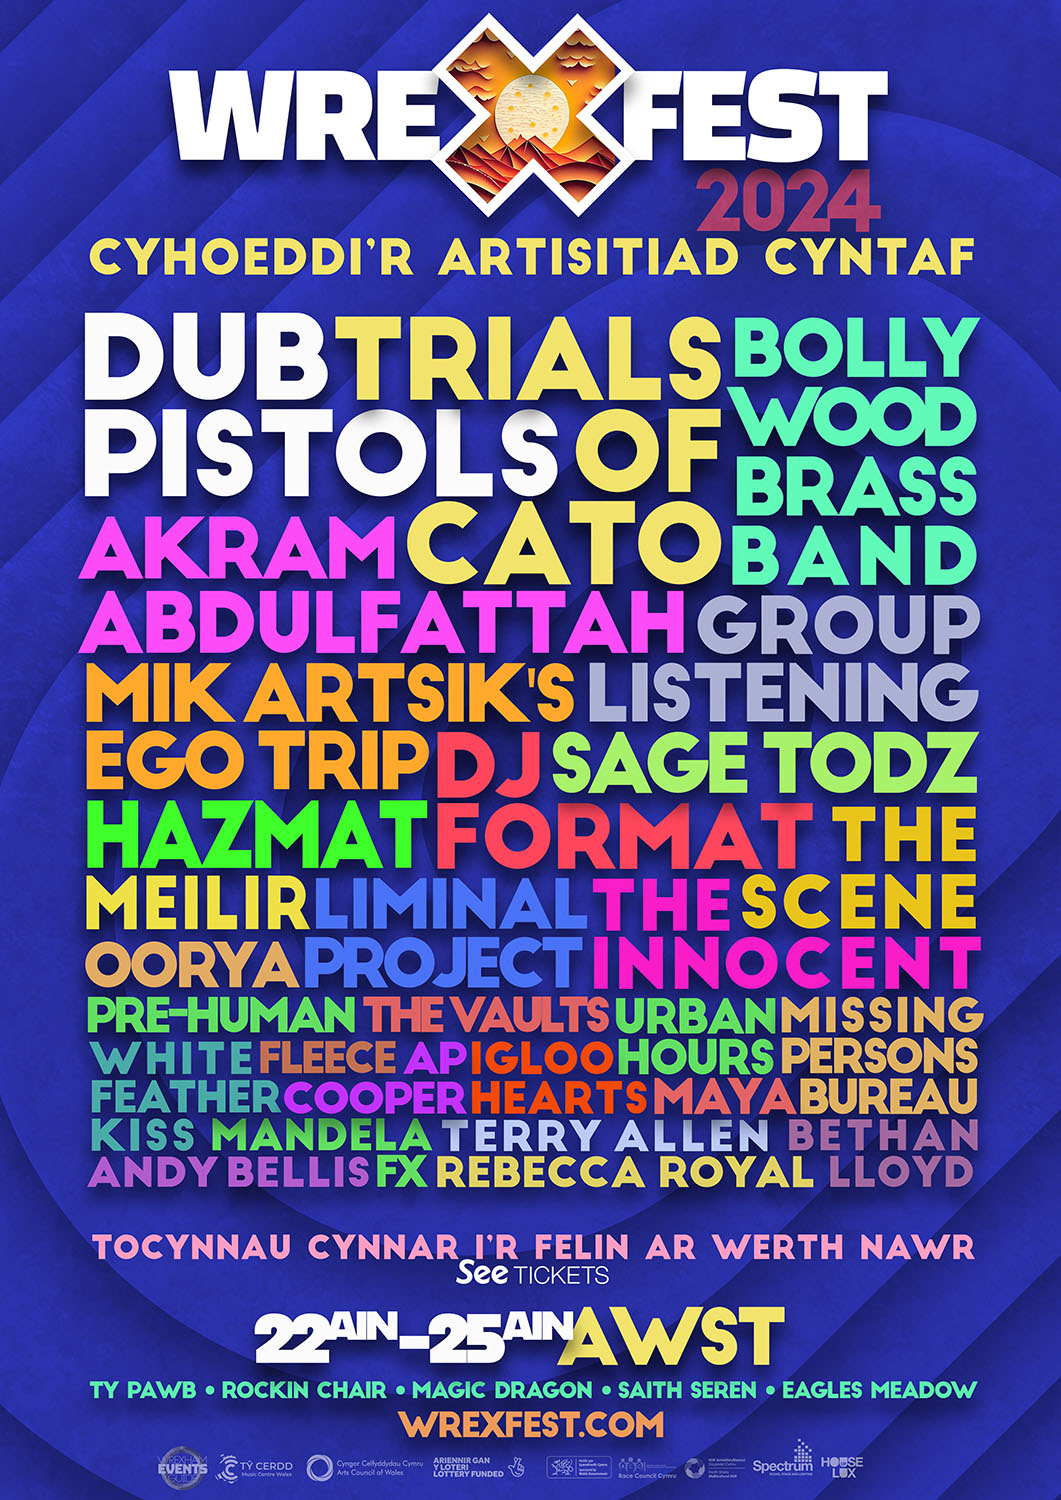 Wrexfest 2014 Cyhoeddi’r artisitiad cyntaf